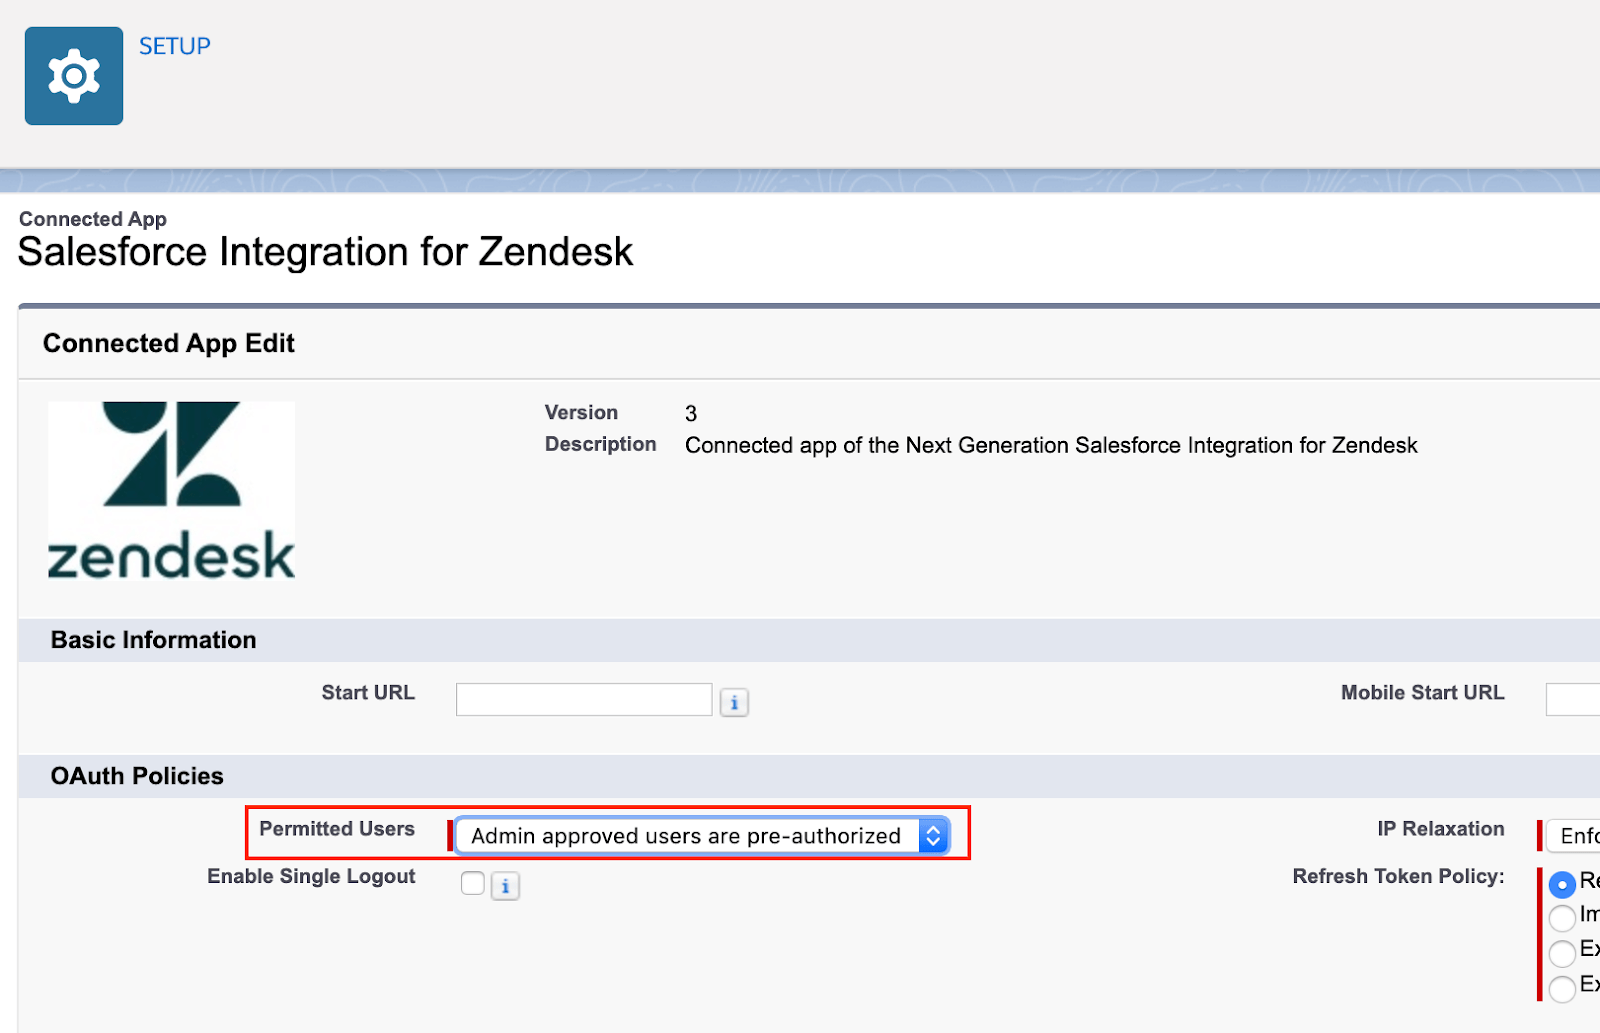 Salesforce Integration for Zendesk Support